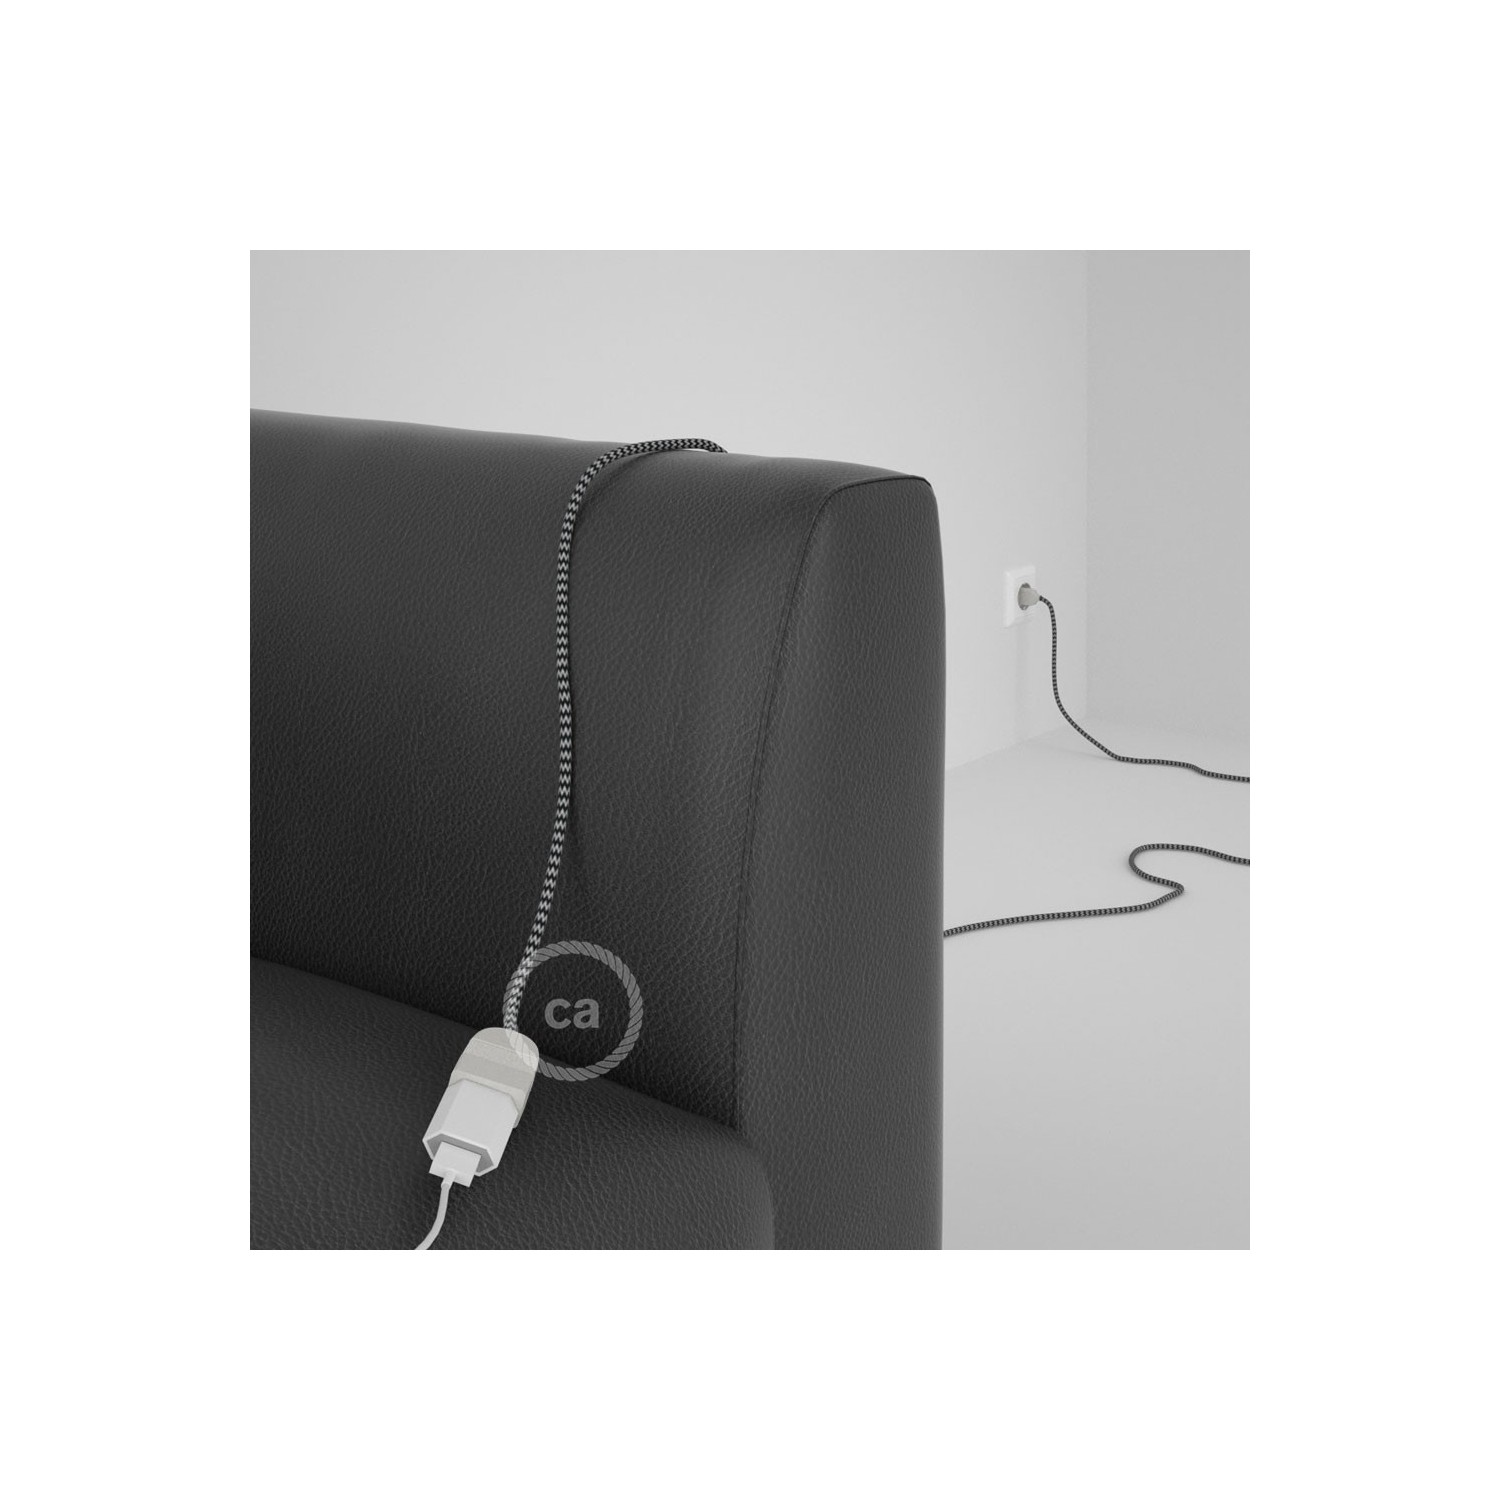 Rallonge électrique avec câble textile RZ04 Effet Soie ZigZag Blanc-Noir 2P 10A Made in Italy.